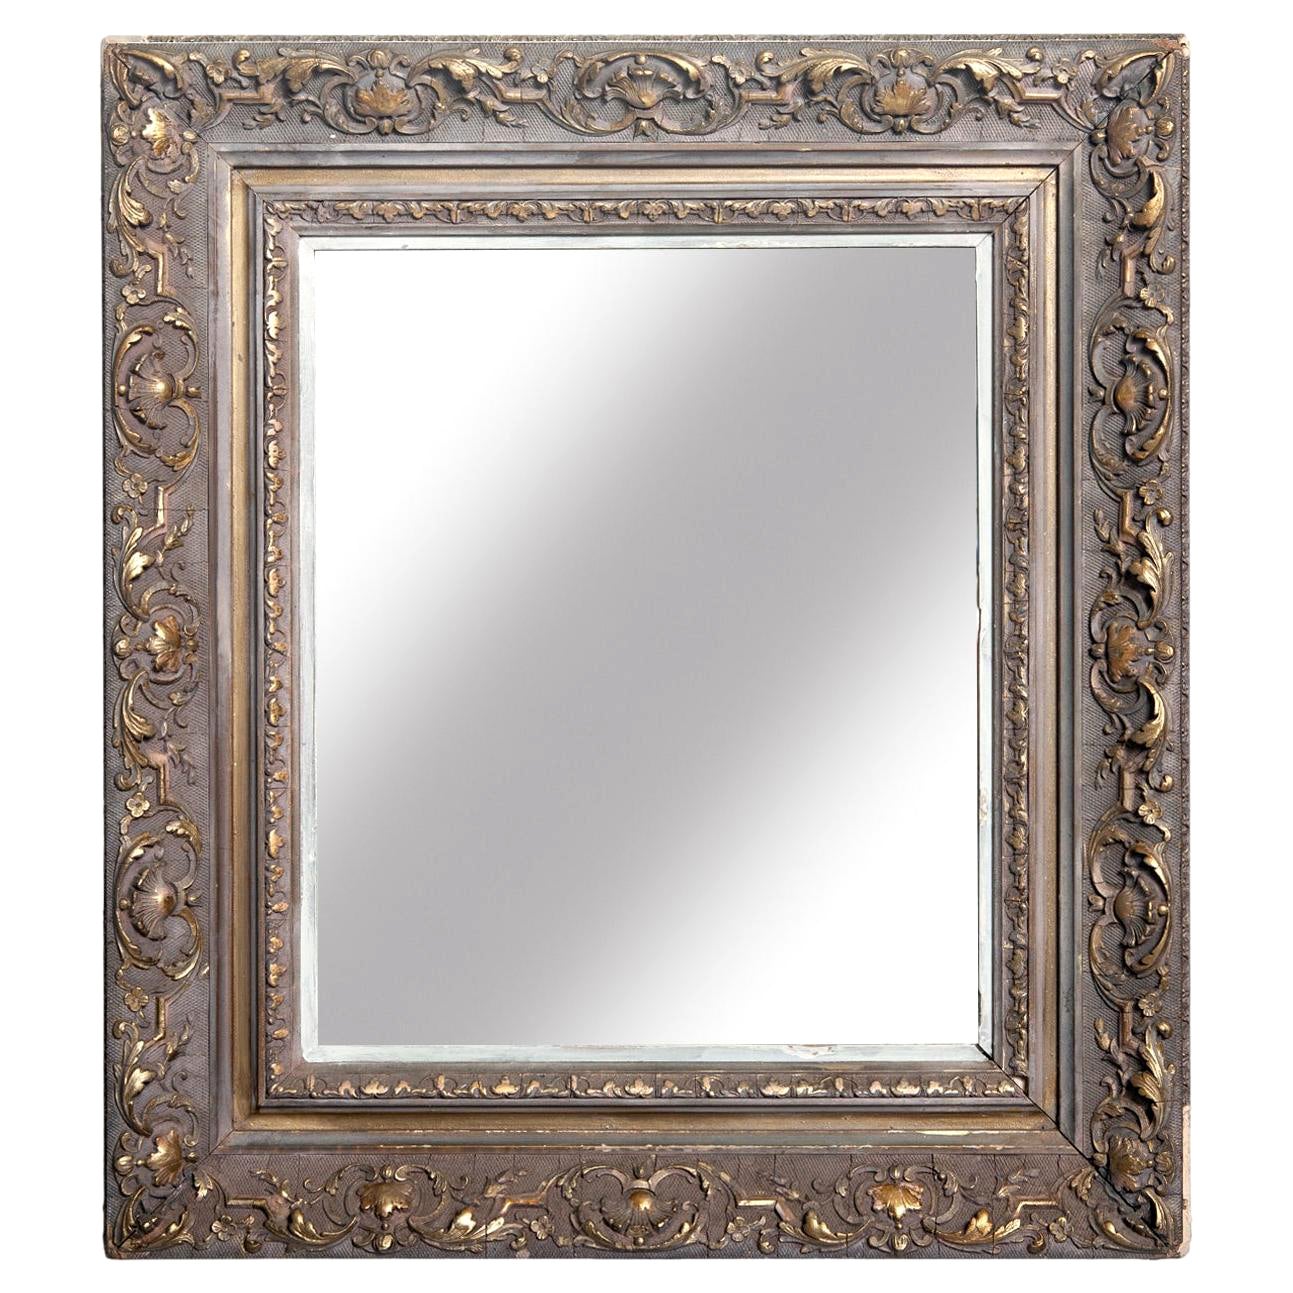 Miroir rectangulaire peint de style victorien avec accents dorés